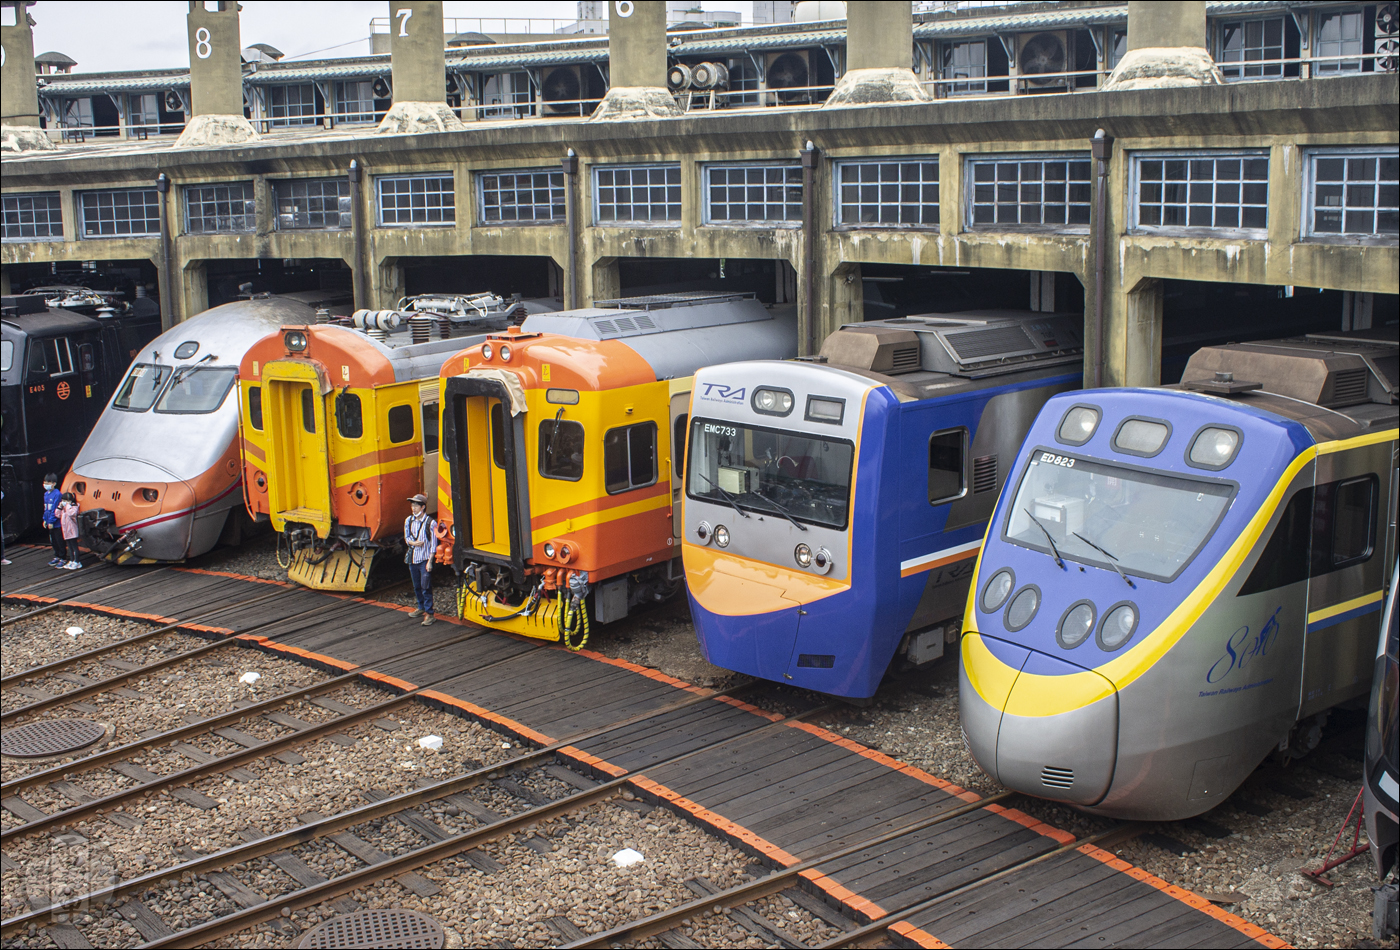 Egy csoda folytán nekem is sikerült megörökíteni a múlt és a jelen villamos motorvonatait anélkül, hogy valaki élőzne valamelyik villamos csatlakozóval. A képen balról jobbra haladva a már említett E1000-es sorozatú mozdonyt, majd Tajvan első villamos motorvonat-sorozatának képviselőjét, az EMU100-as sorozatot, majd az EMU300-as, EMU700-as és EMU800-as sorozatot láthatjuk.